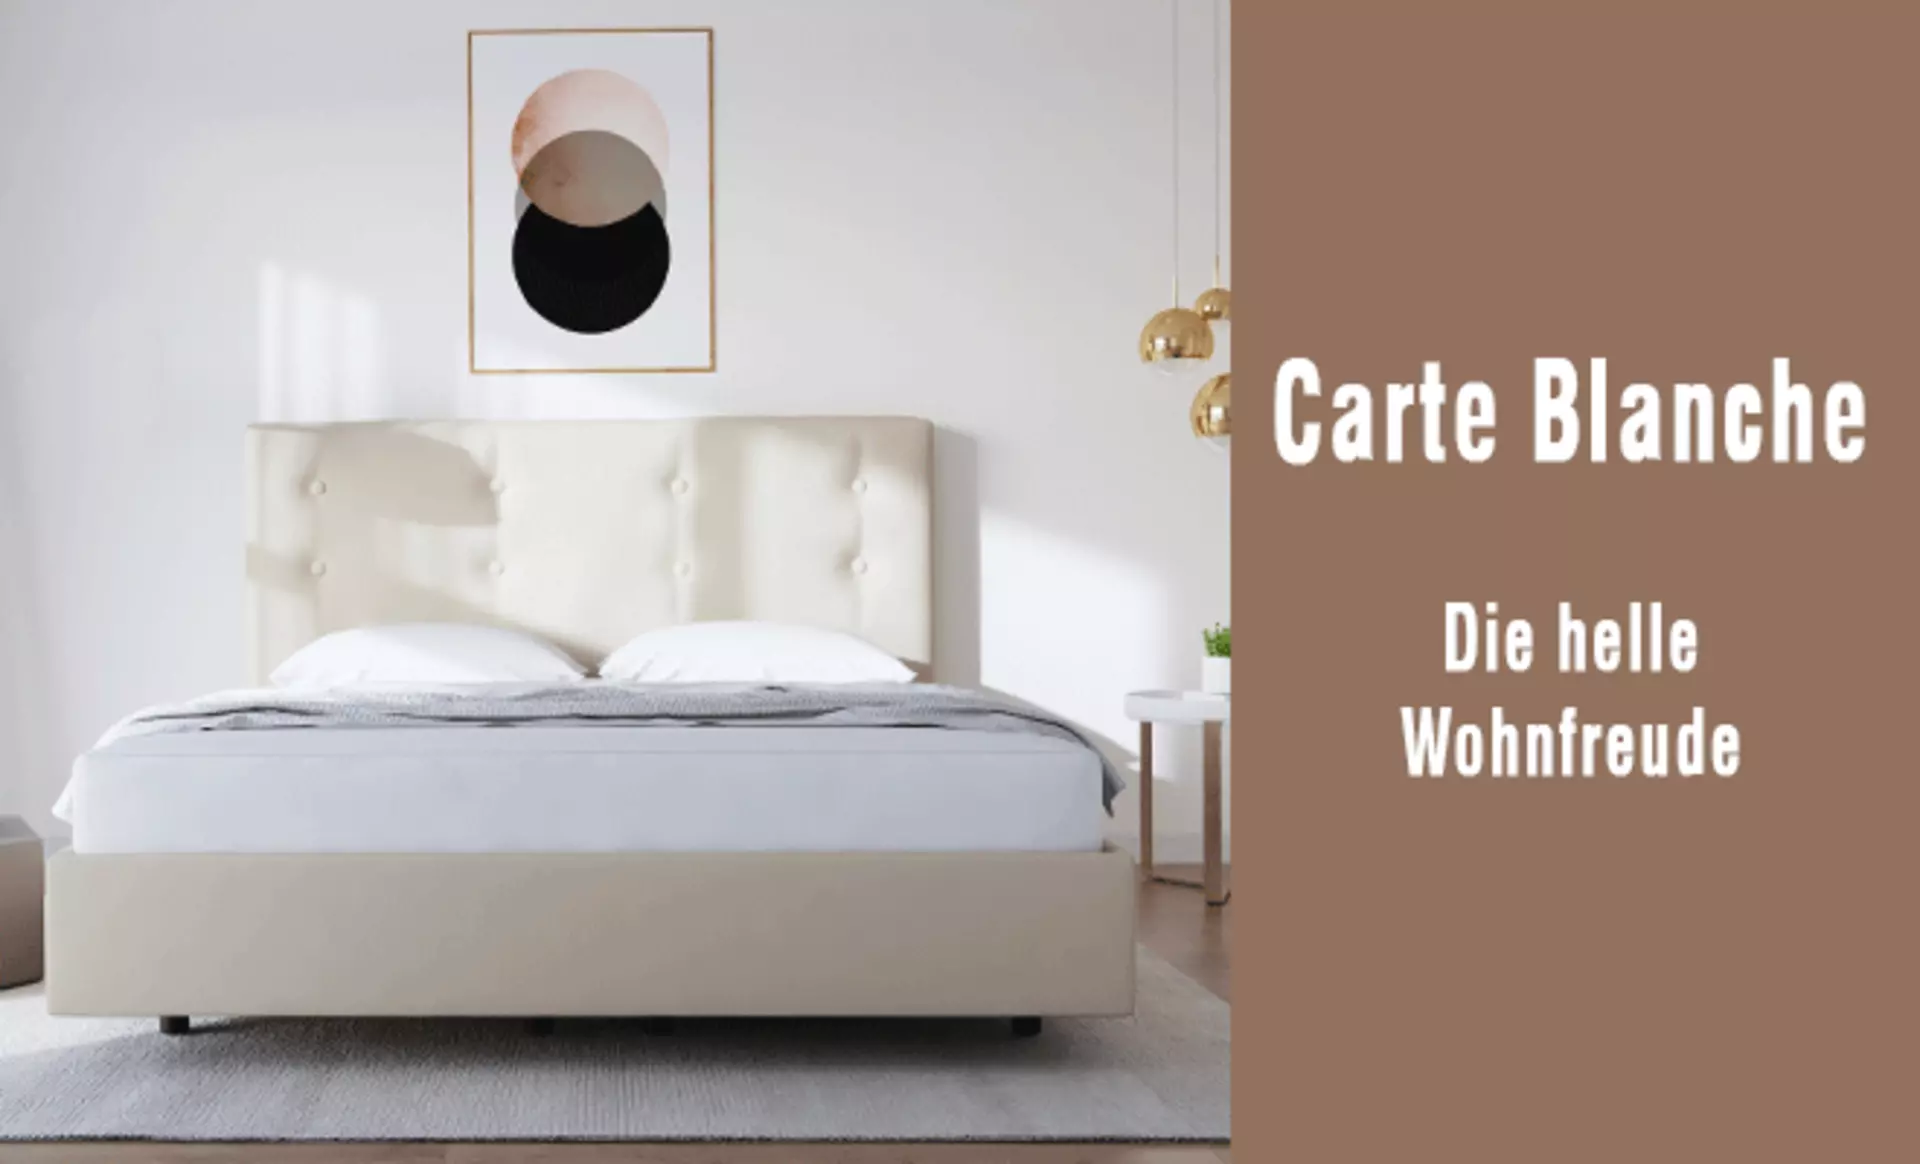 Carte Blanche - Die helle Wohnfreude. Mit weißen Designermöbeln von interni by inhofer zeitlos einrichten